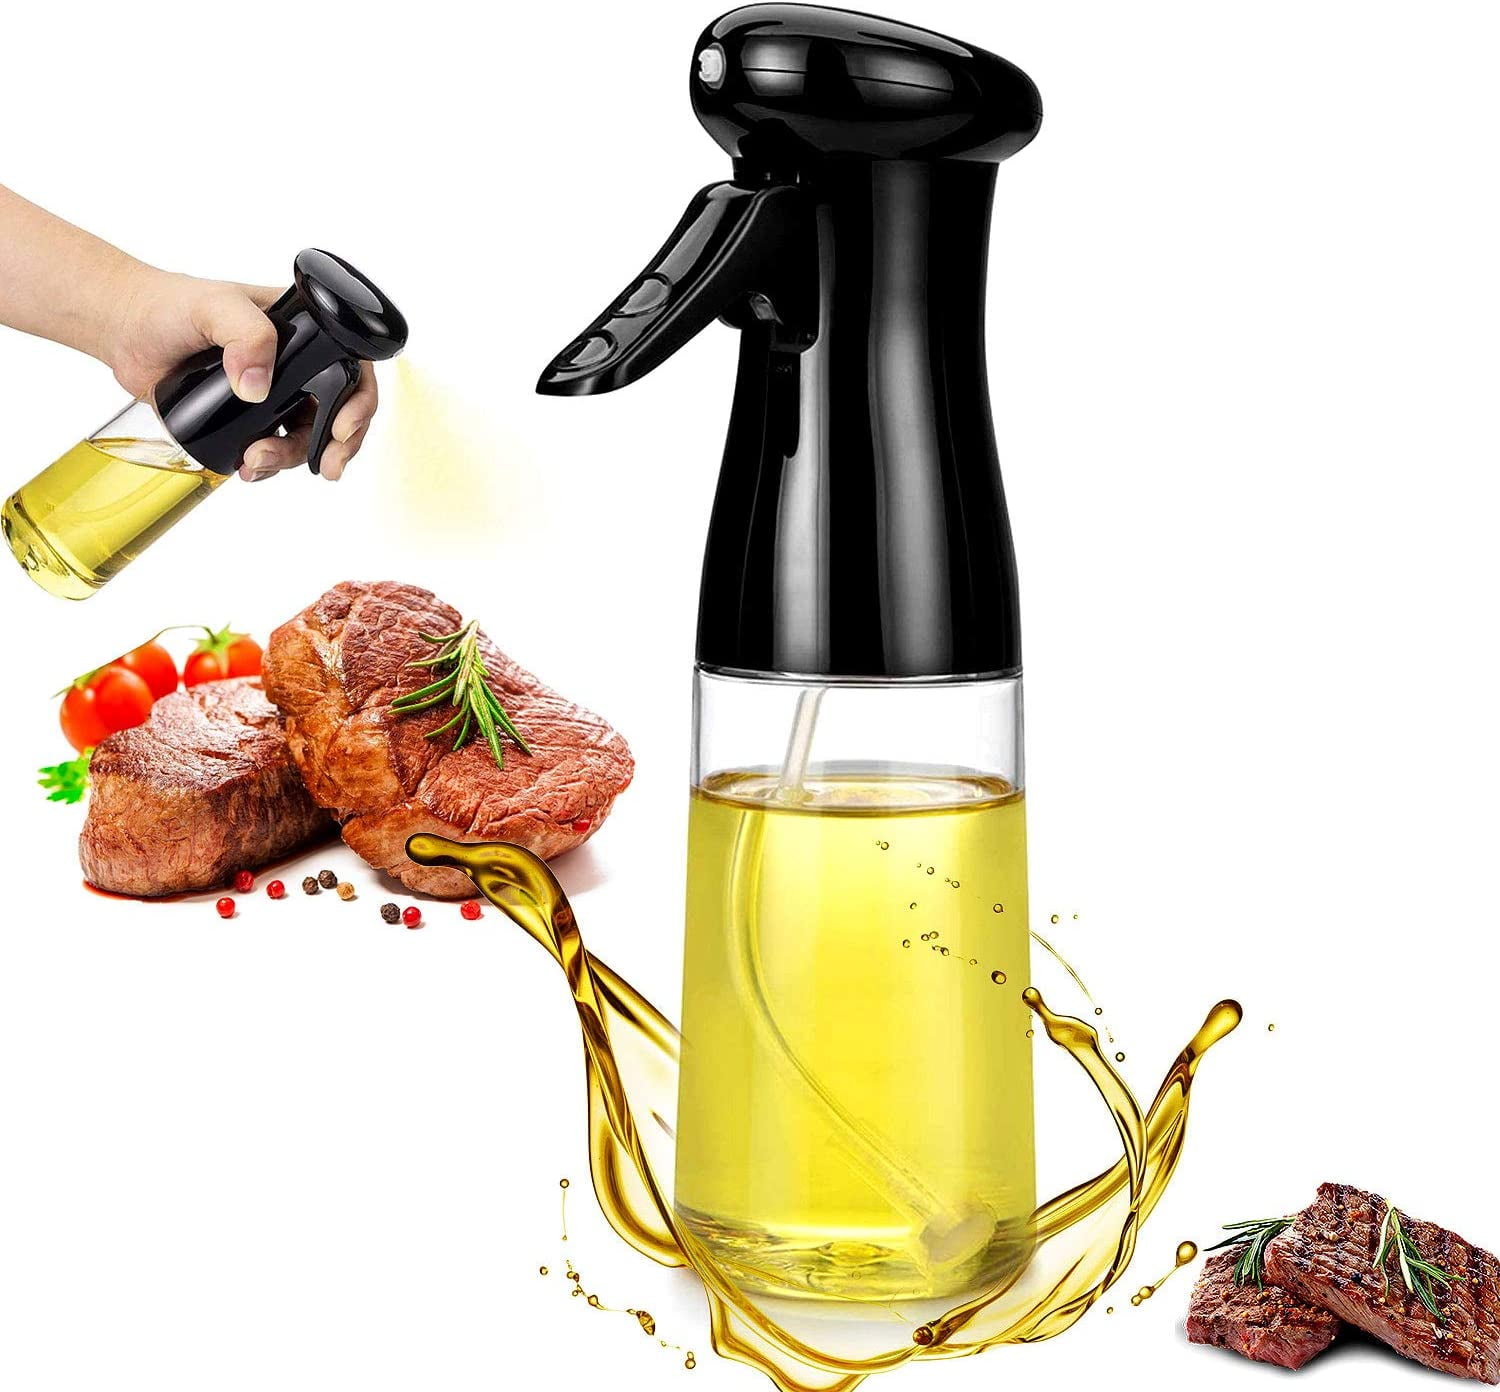  Pulverizador de aceite para cocinar, rociador de aceite de  cocina, botellas de aceite de oliva, capacidad de 3.4 onzas, botella de  vidrio de grado alimenticio, pulverizador de aceite para freidora de